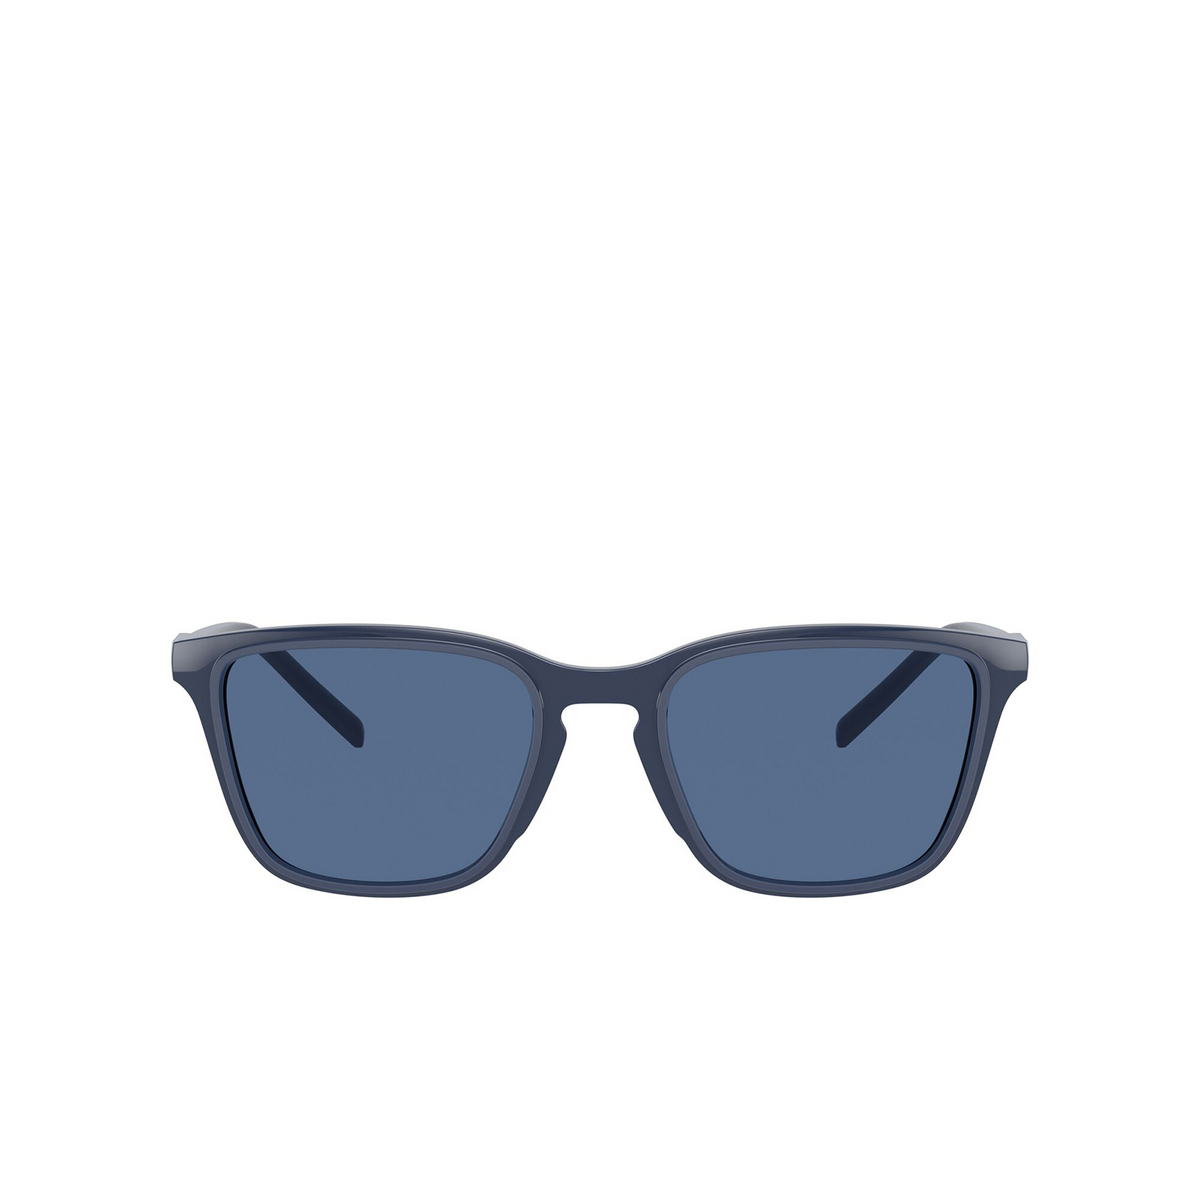 Dolce & Gabbana® Square Sunglasses: DG6145 color Blue 329480 - front view.